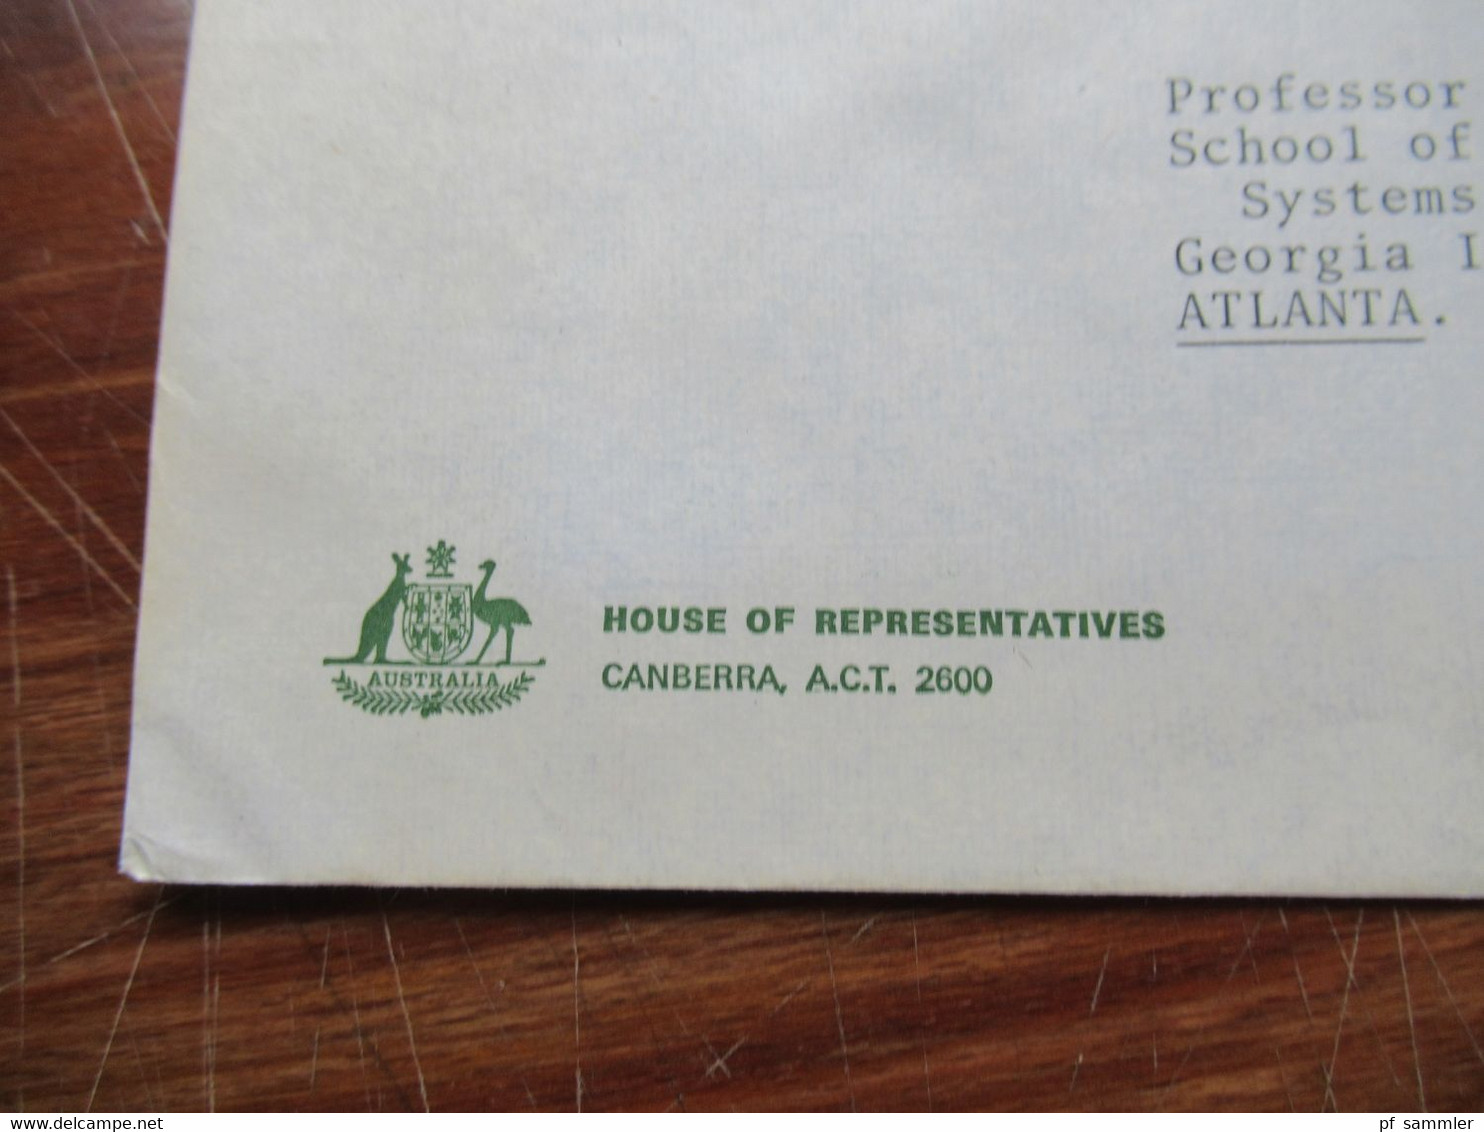 Australien 1980 / 90er Jahre Belege / Briefe / Dokumente alles mit Bezug zur Regierung / Government auch Autogramme